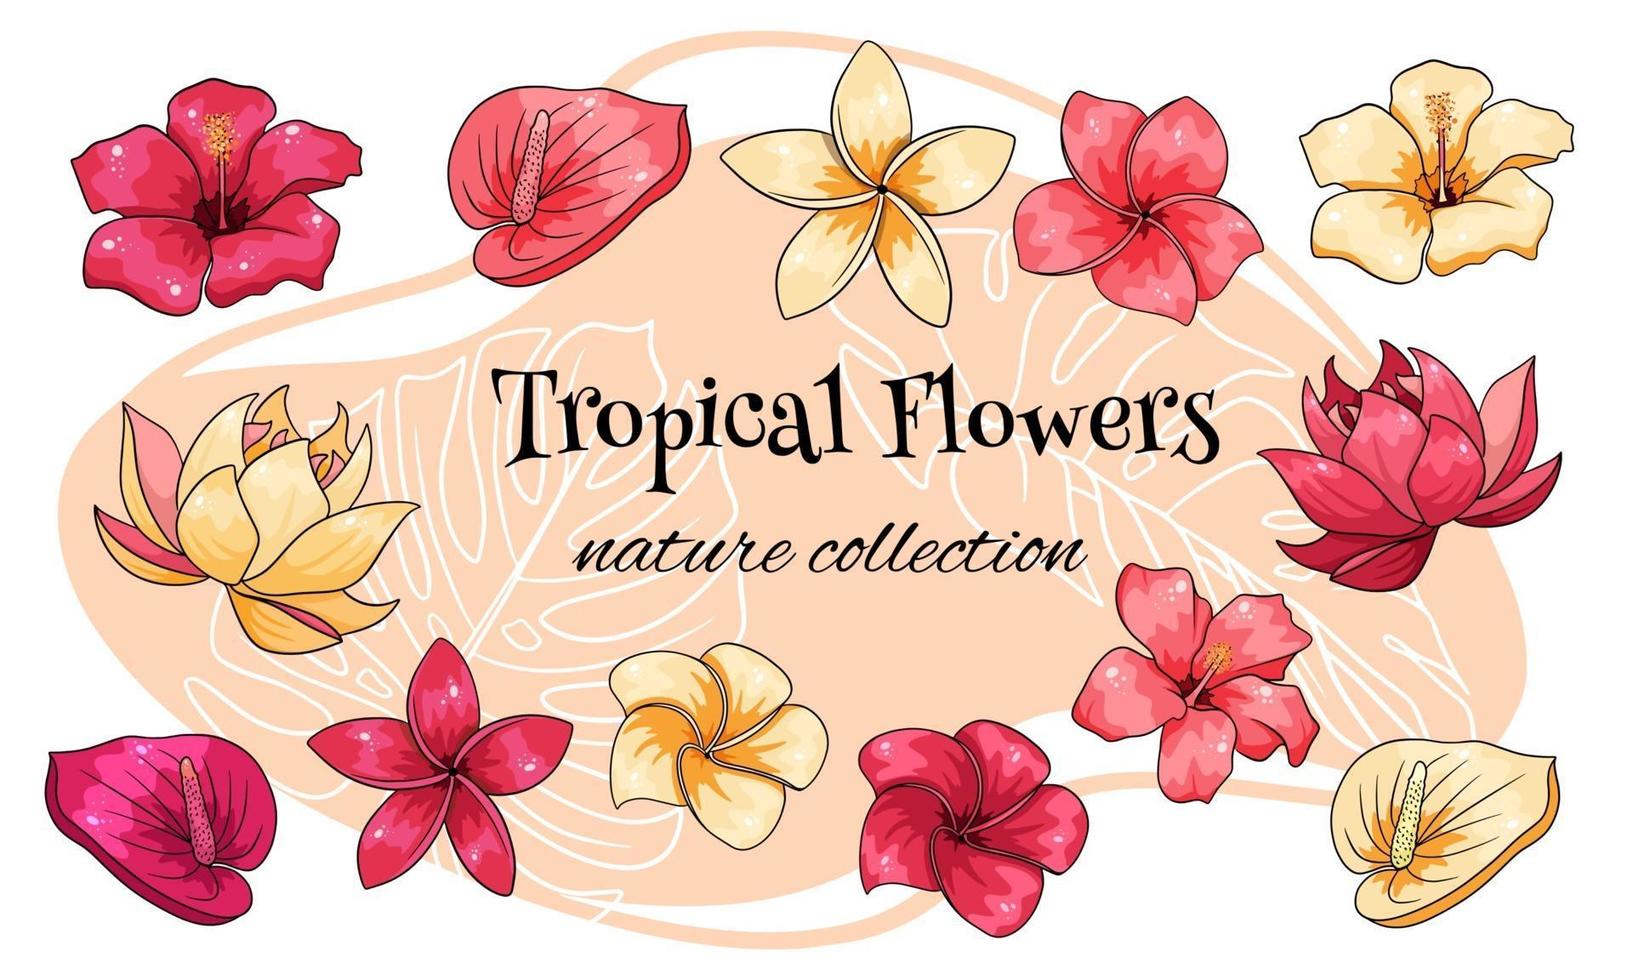 collezione tropicale con fiori esotici in stile cartone animato vettore